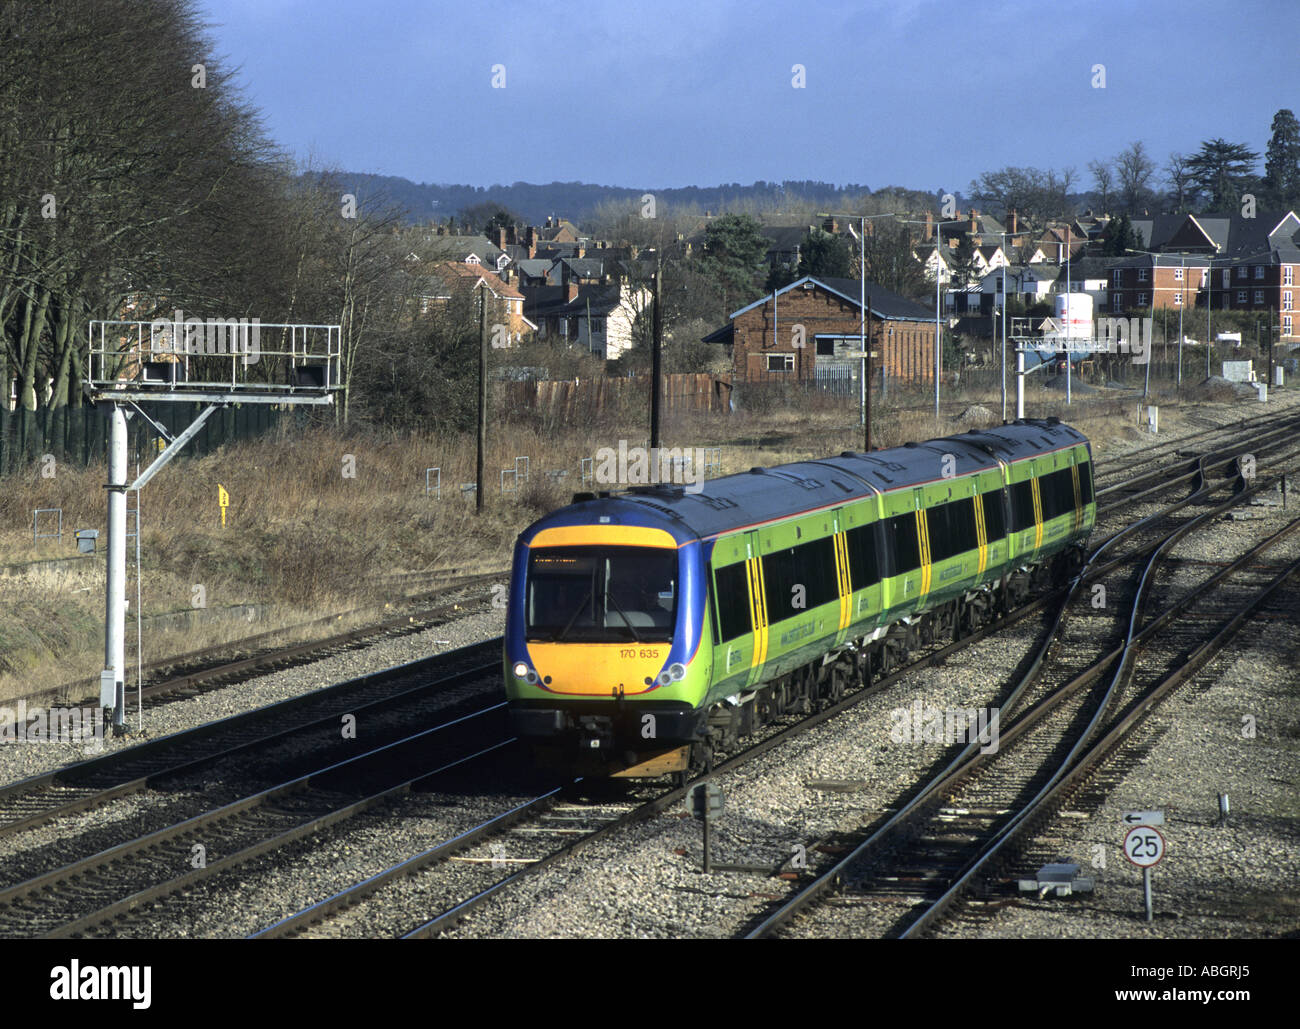 Des trains centrale train diesel de la classe 170 à Bromsgrove, Worcestershire, Angleterre, RU Banque D'Images